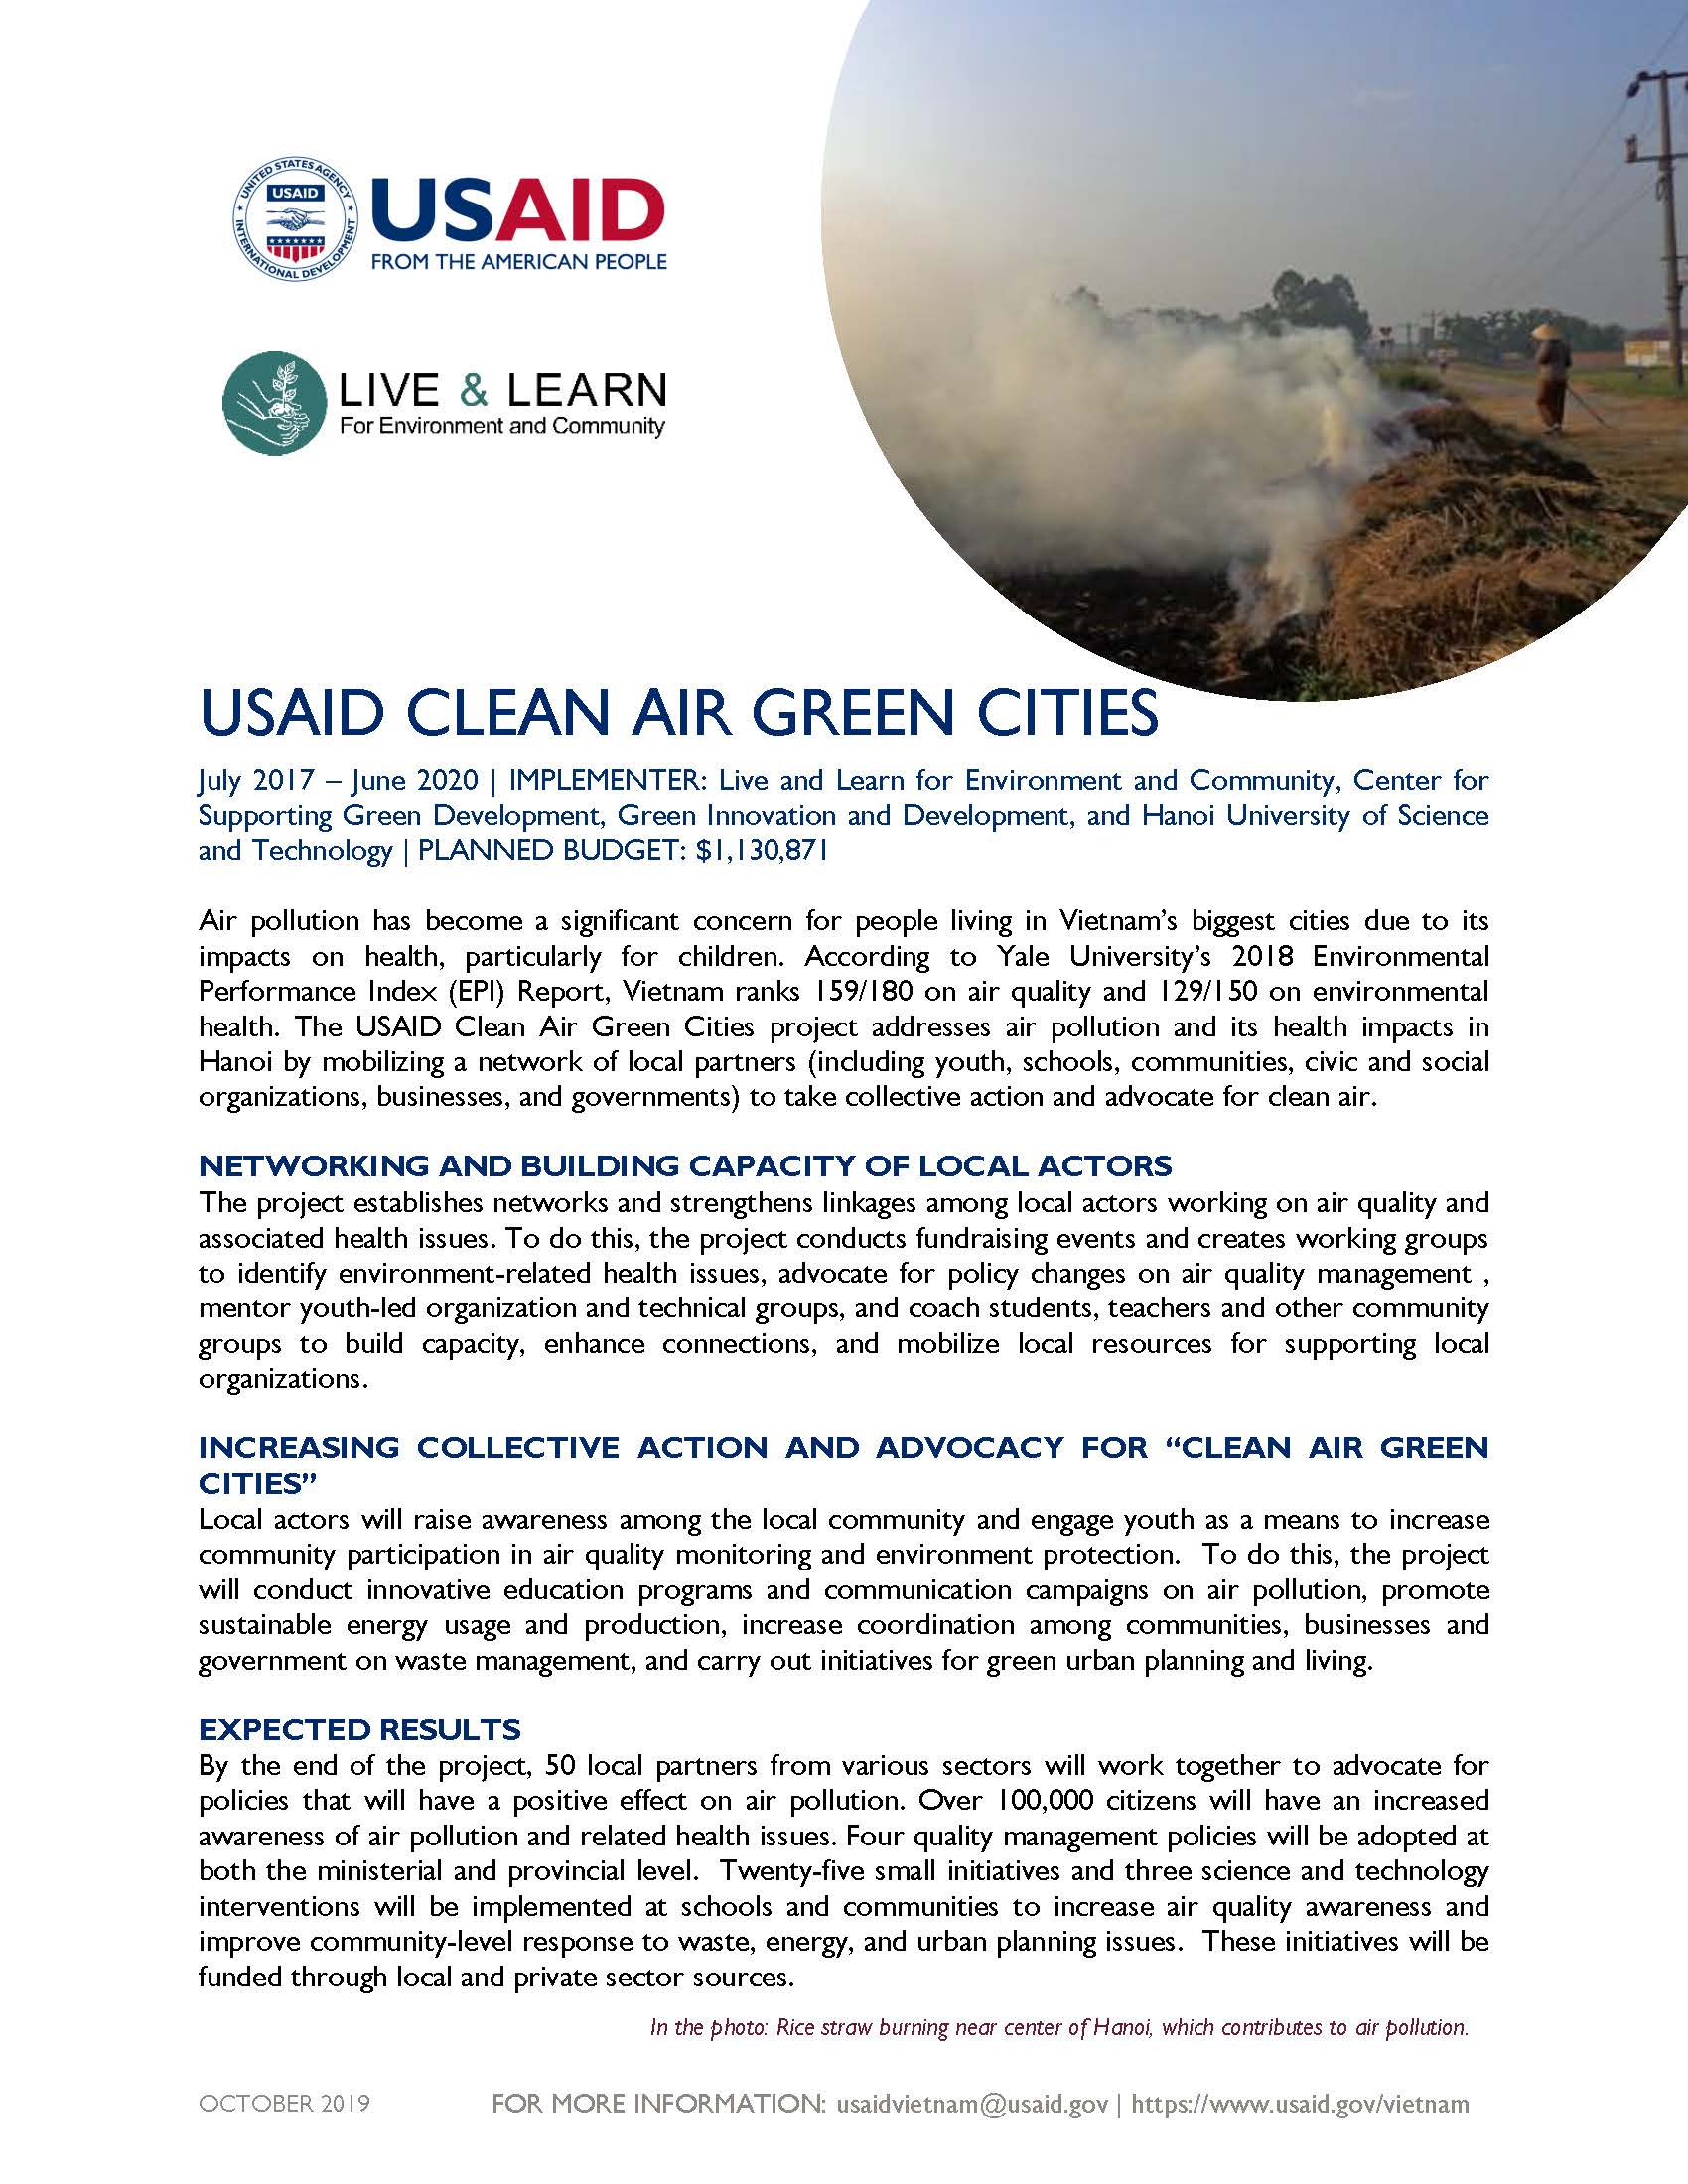 Fact Sheet: USAID Clean Air Green Cities